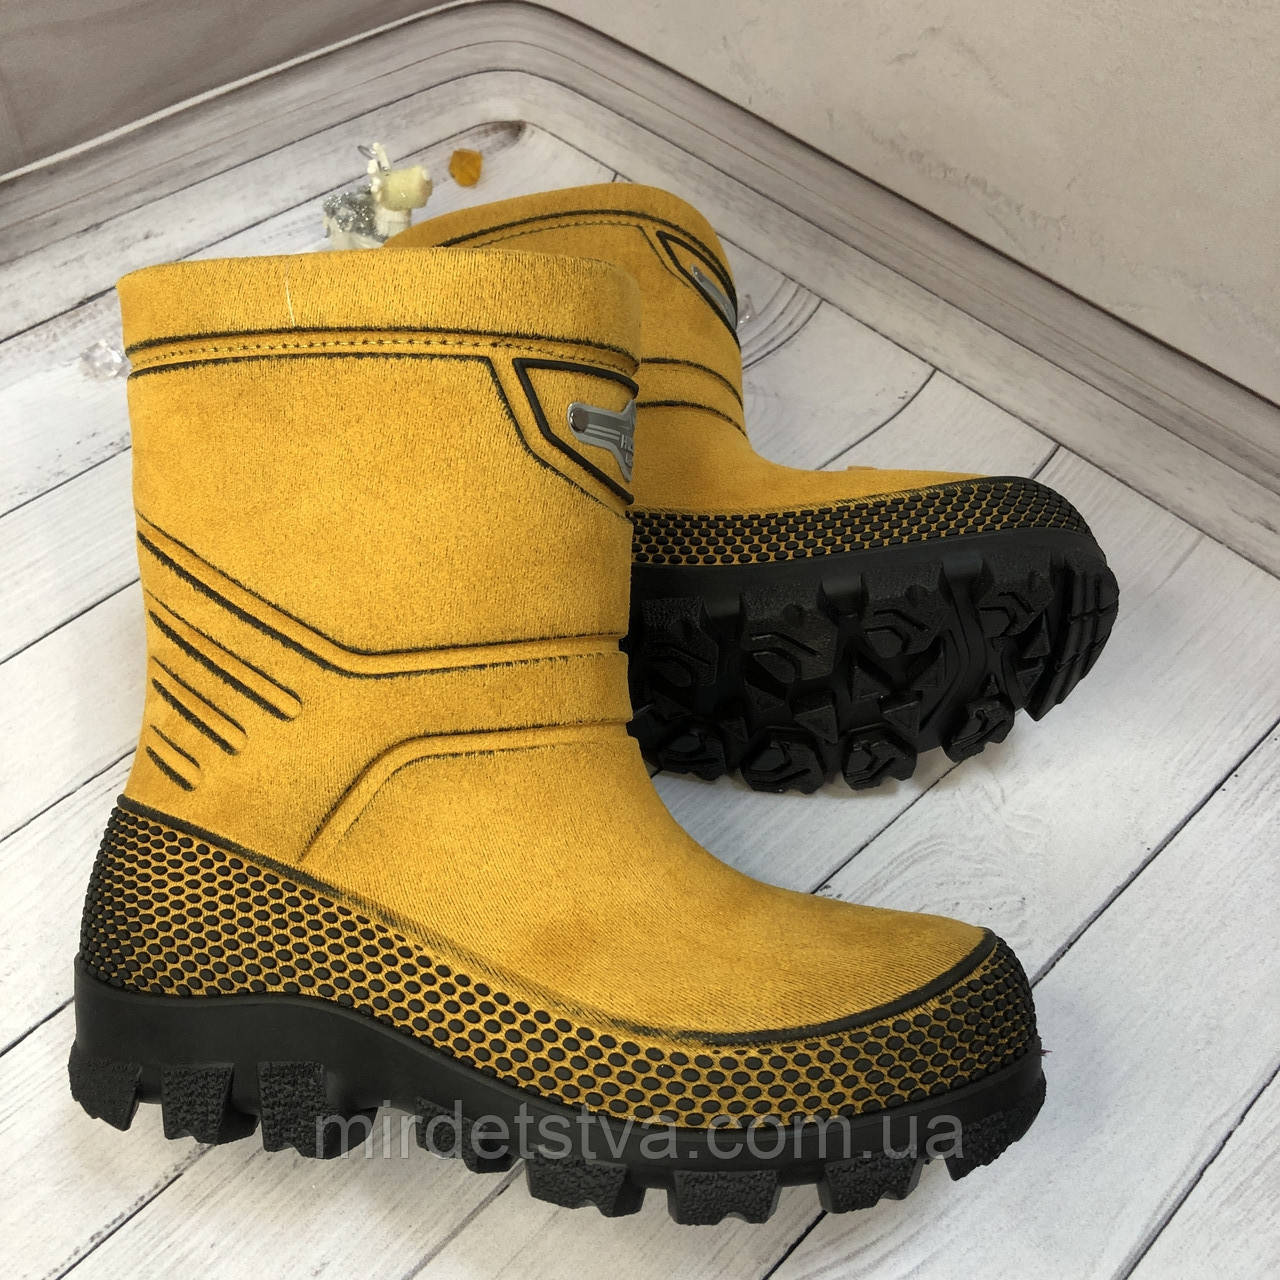 Зимові дитячі непромокальні чоботи на хутрі (жовті) Husky, розміри 25-36, Alisa Line